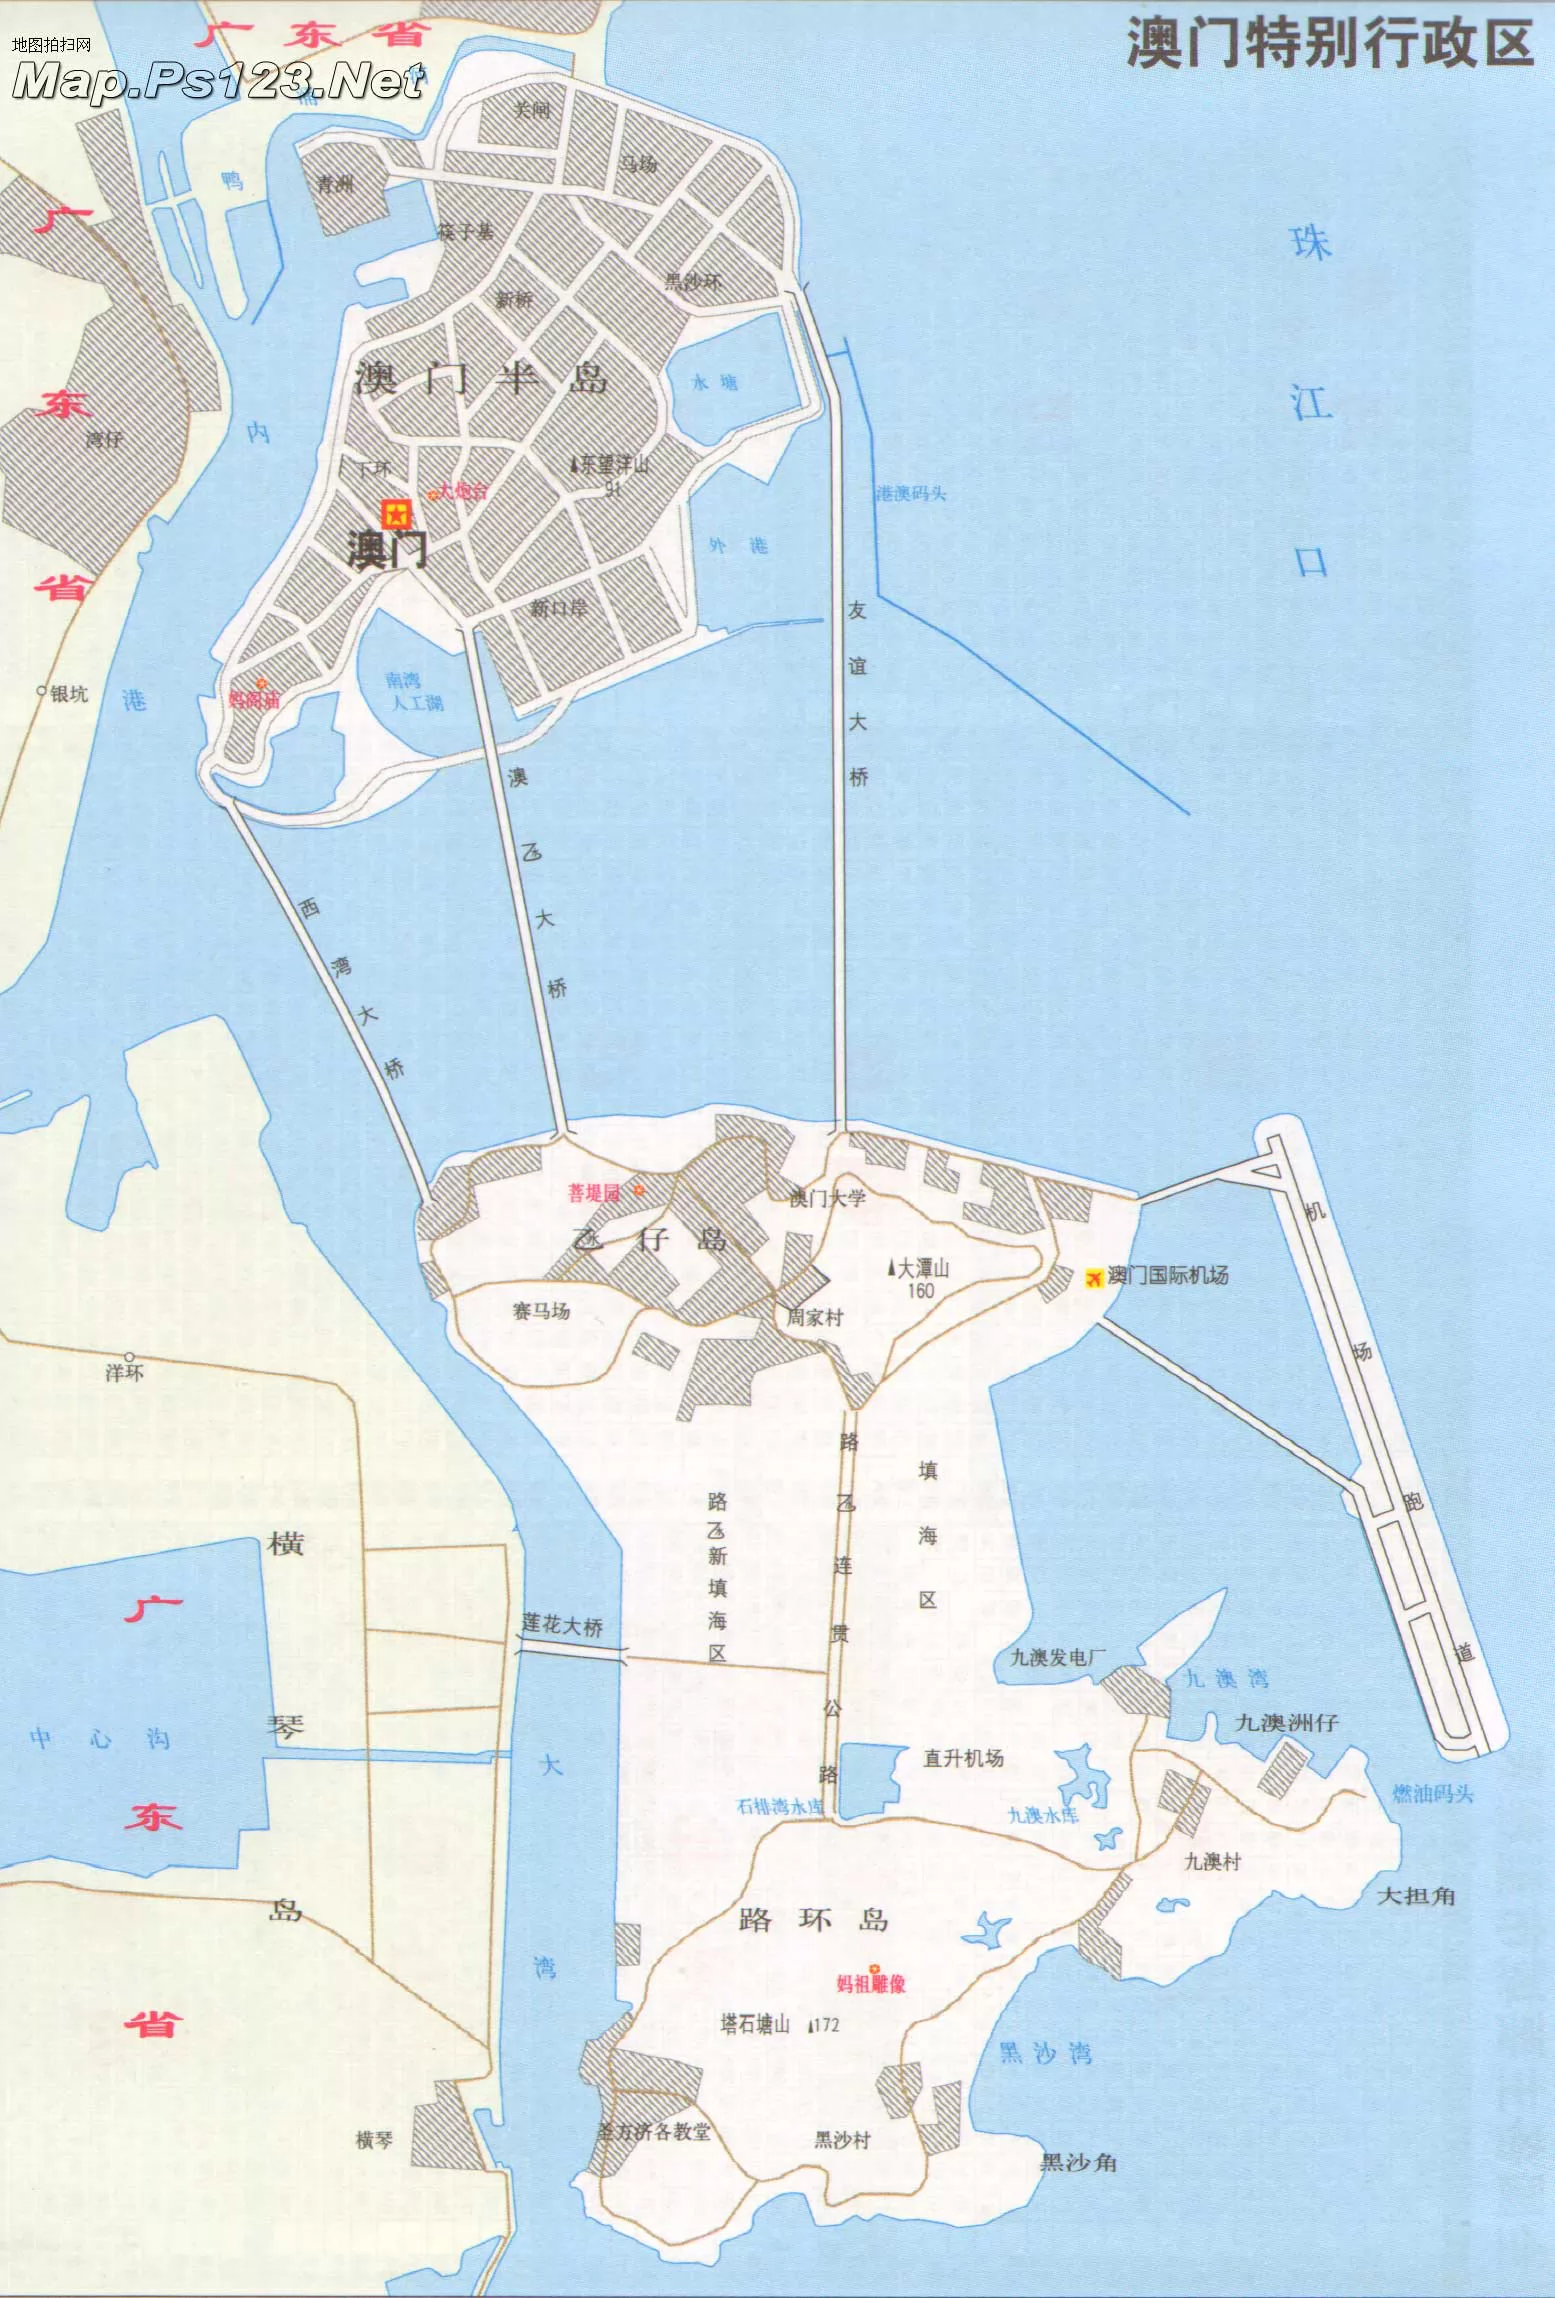 澳门半岛地图 - 中国地图全图 - 地理教师网